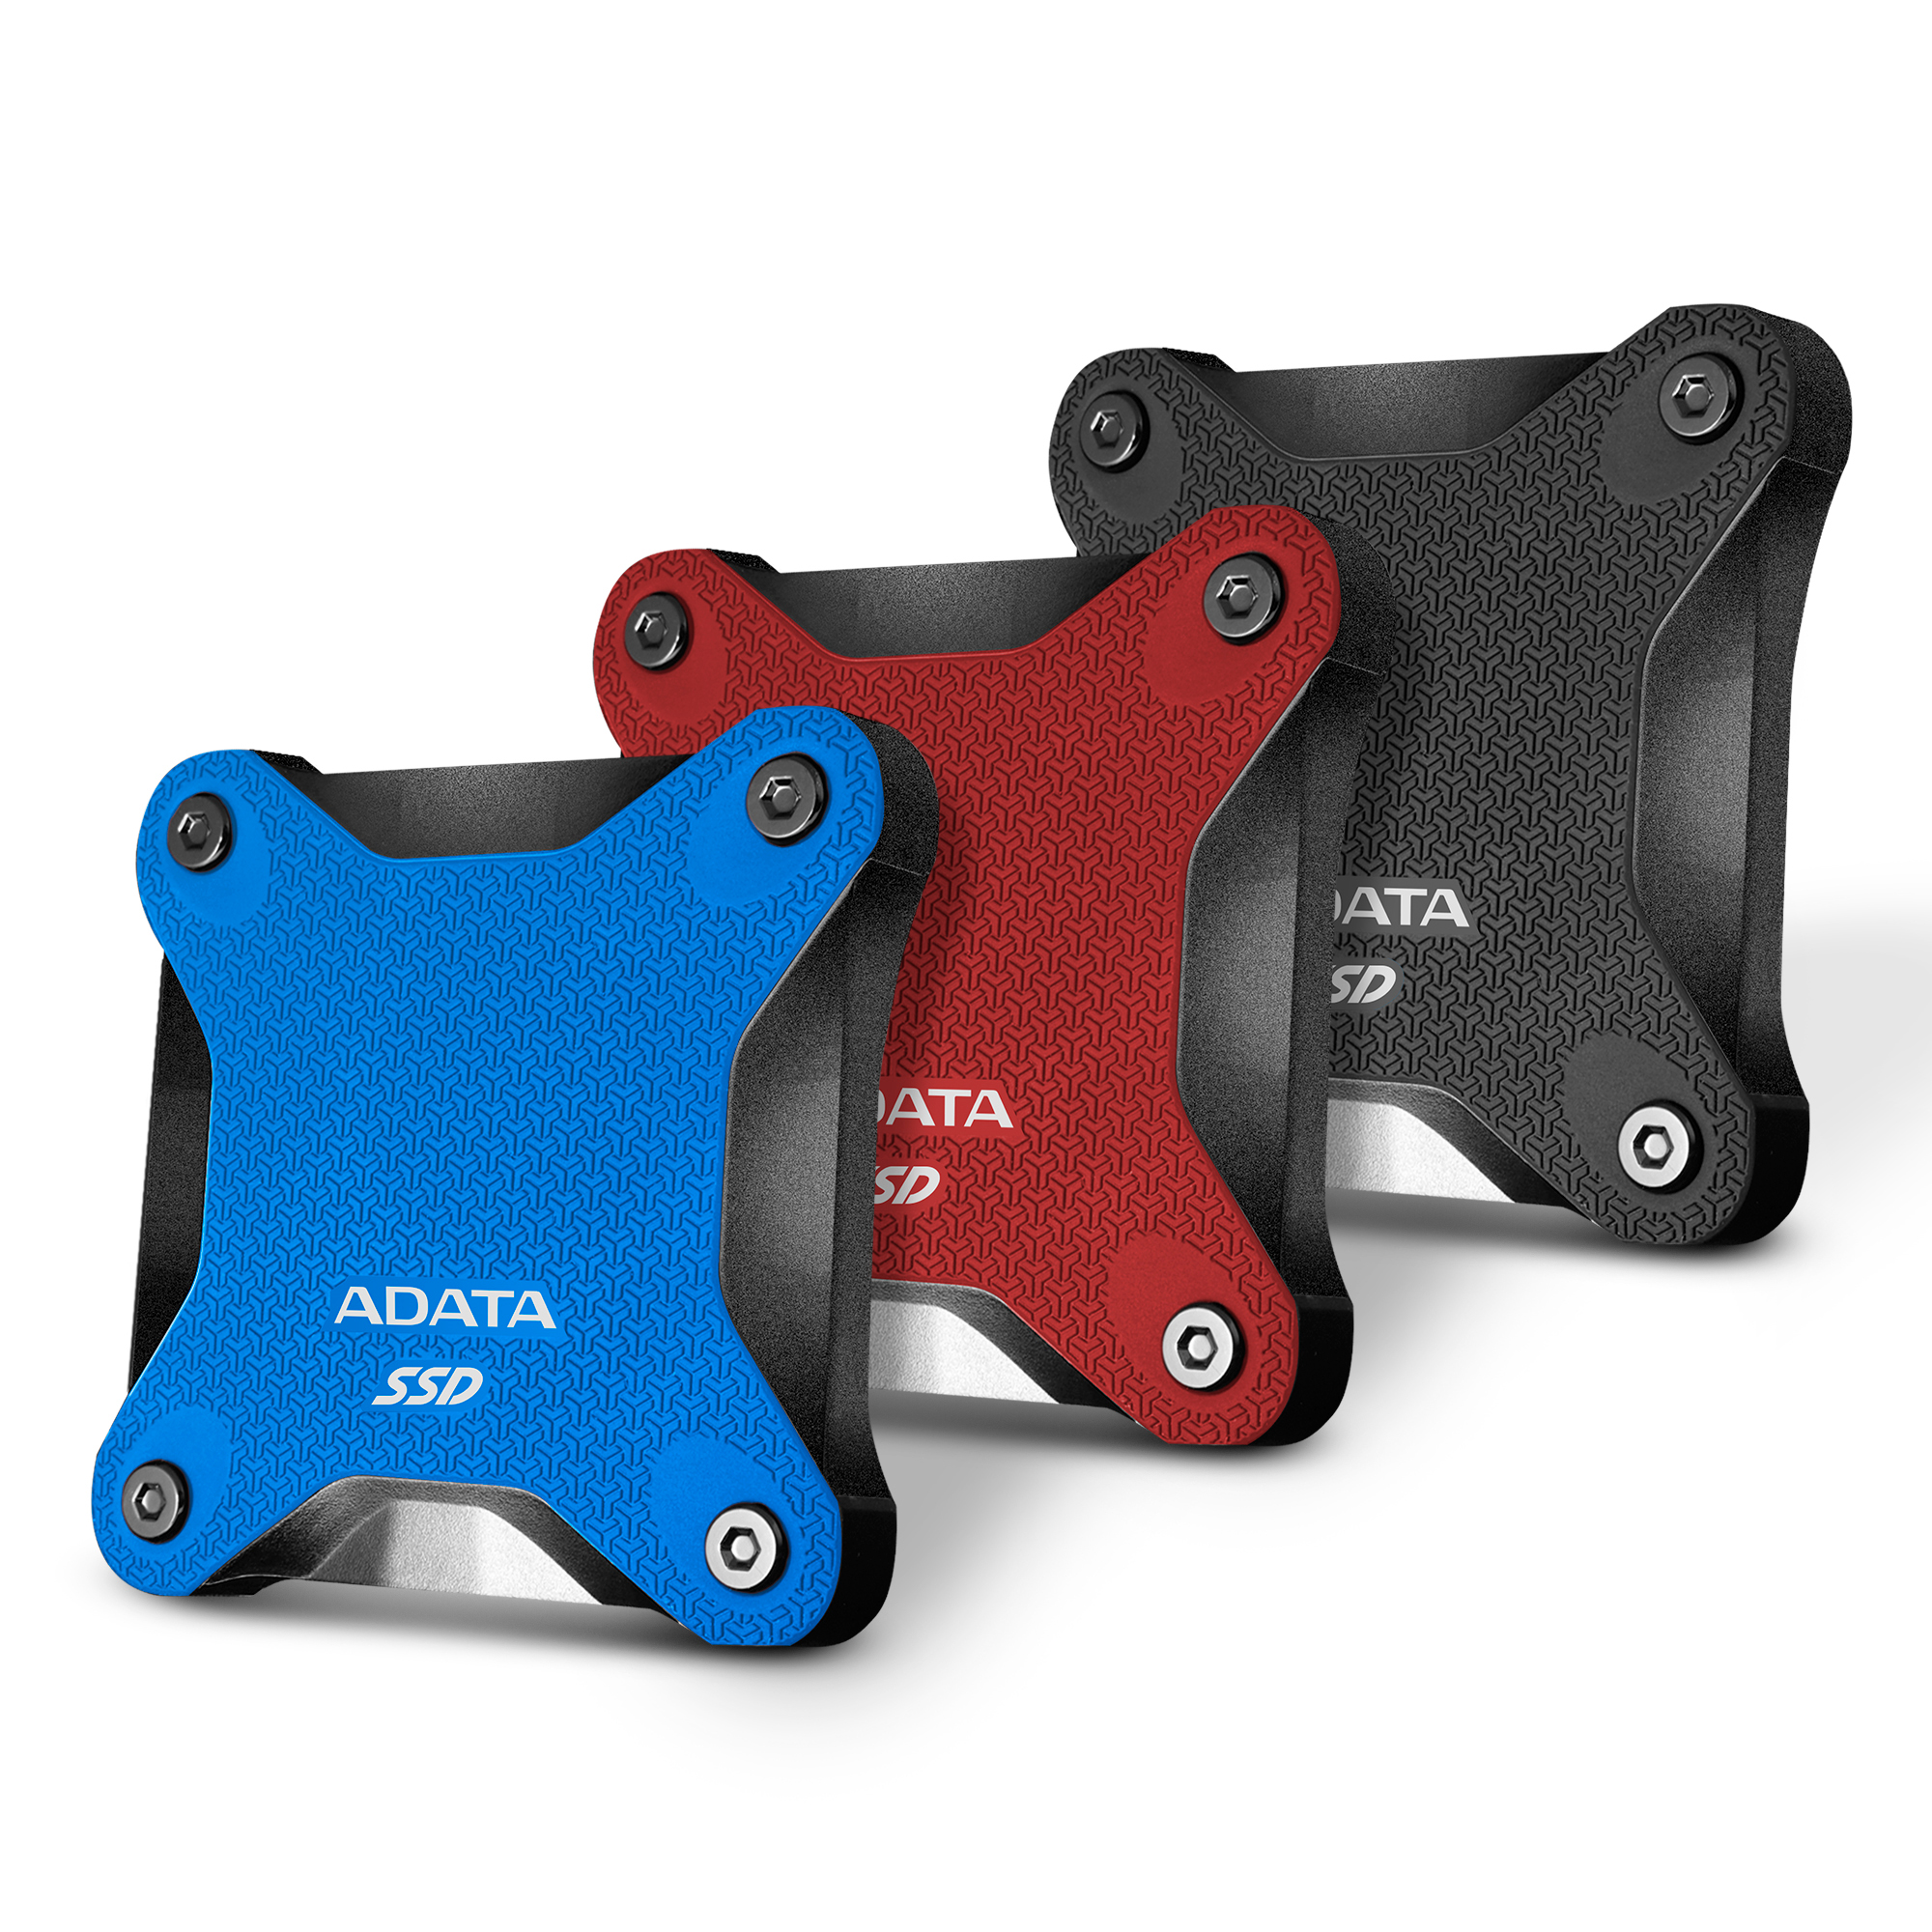 ADATA запускает внешний твердотельный накопитель SD600Q